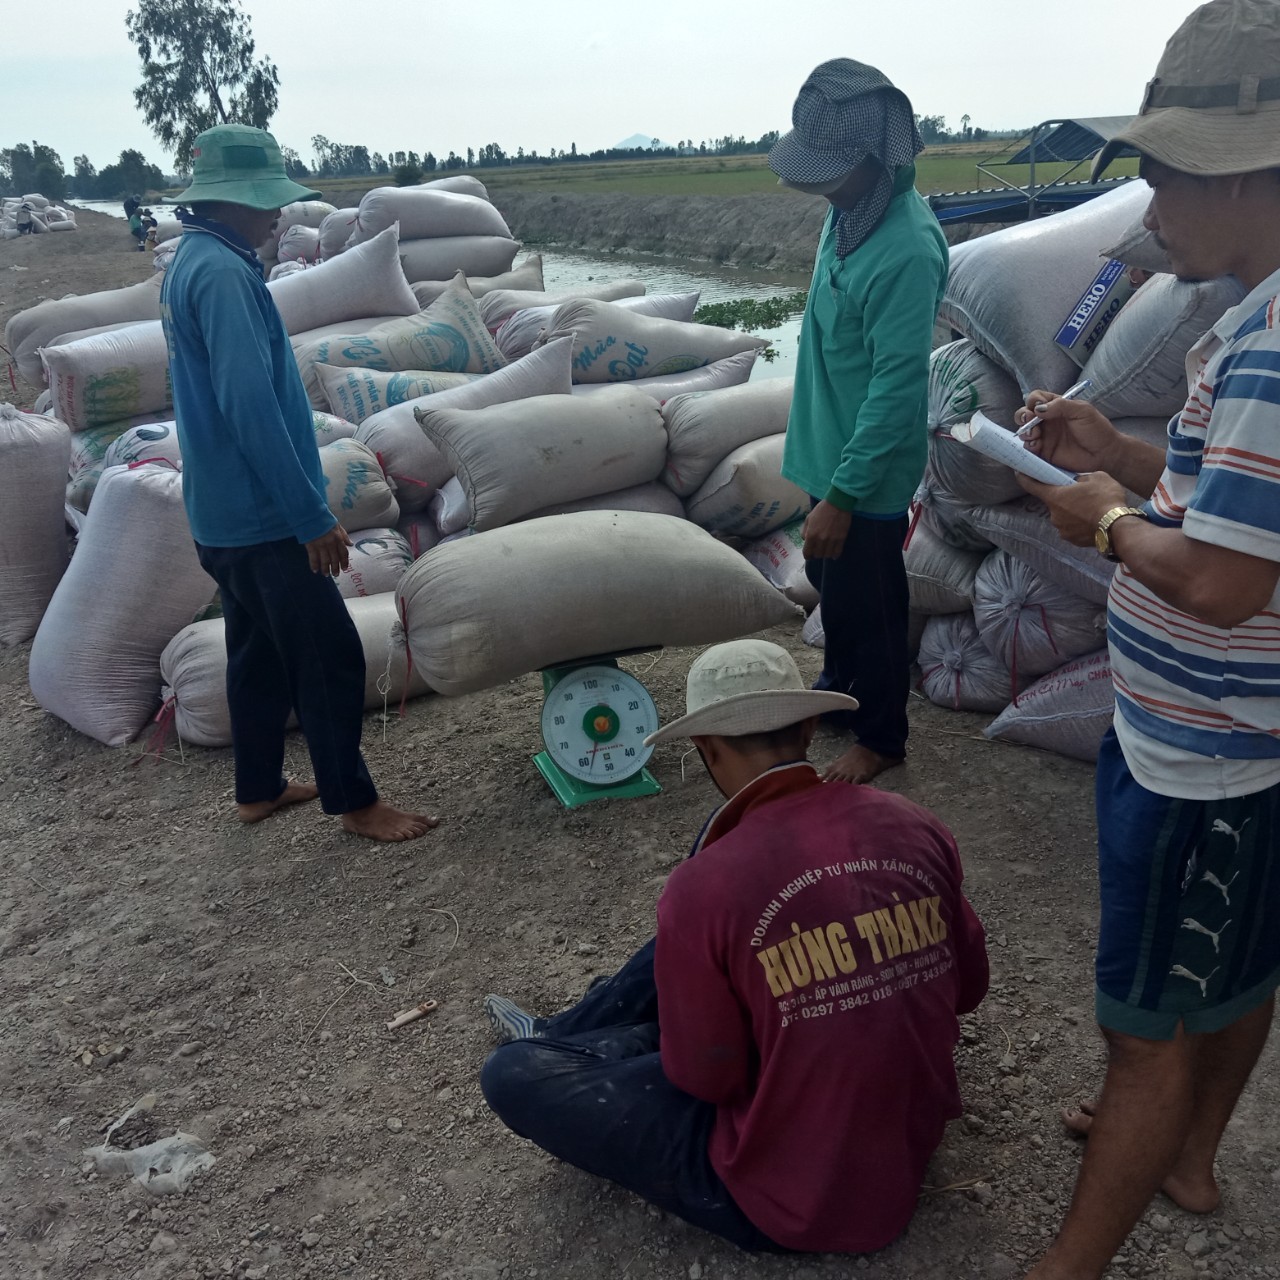 Liên kết trồng  300 hecta lúa đang thu hoạch tại Hòn Đất - Kiêng Giang